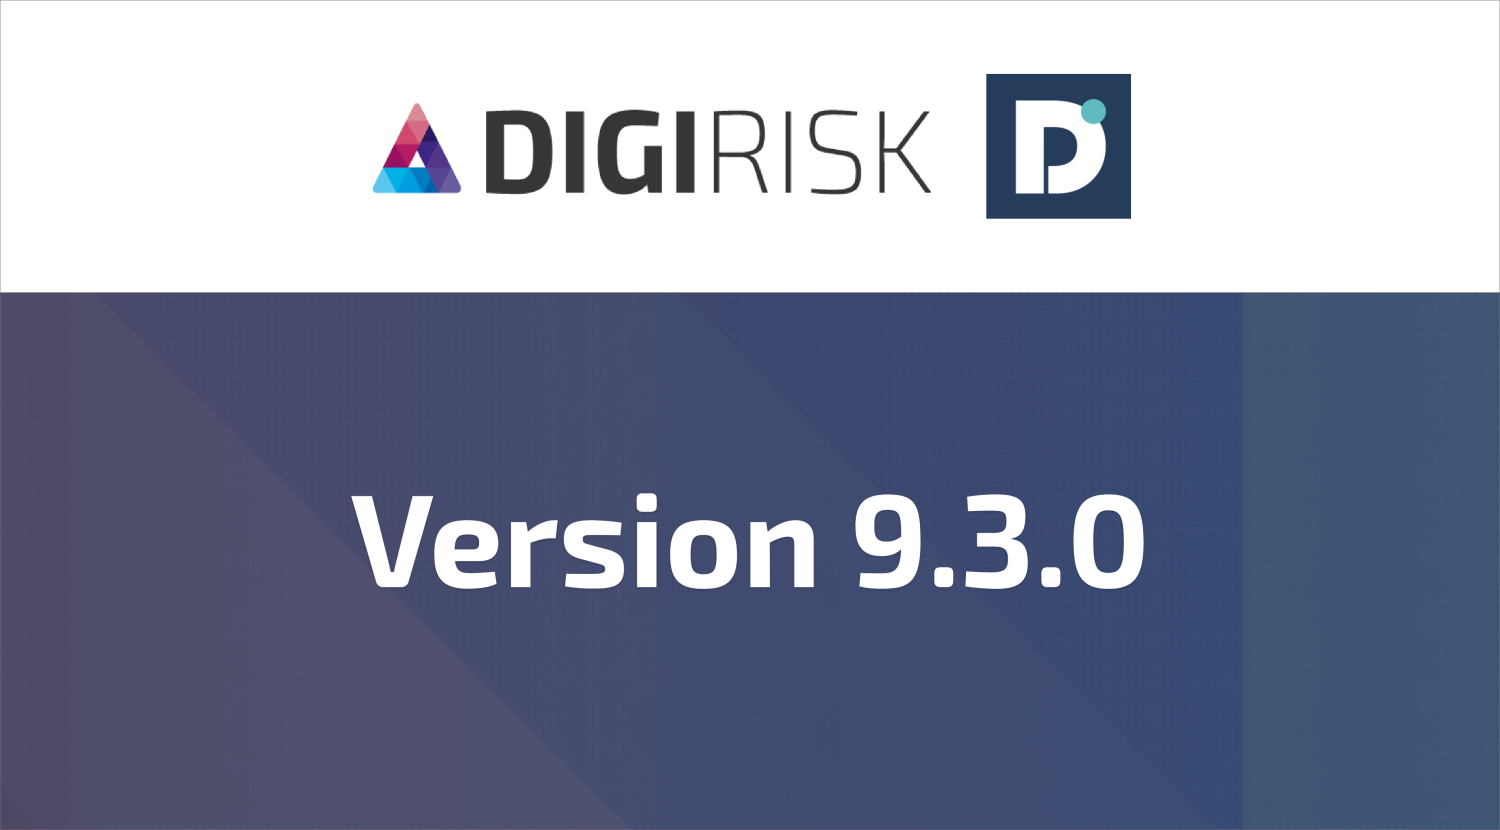 DigiRisk version 9.3.0